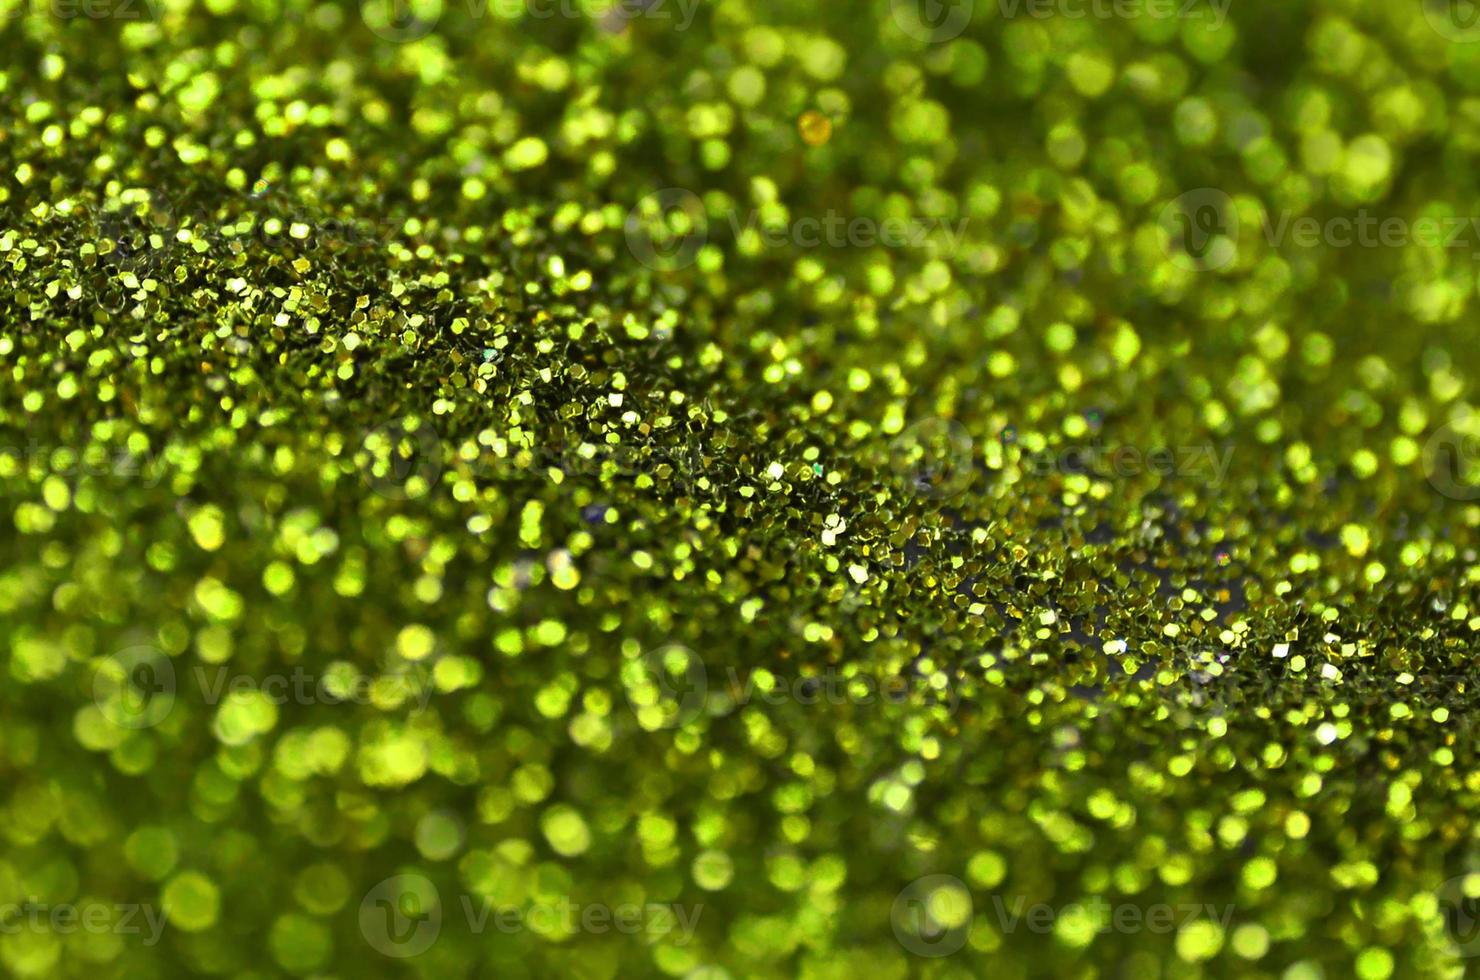 Lentejuelas decorativas verde lima. imagen de fondo con luces bokeh brillantes de elementos pequeños foto